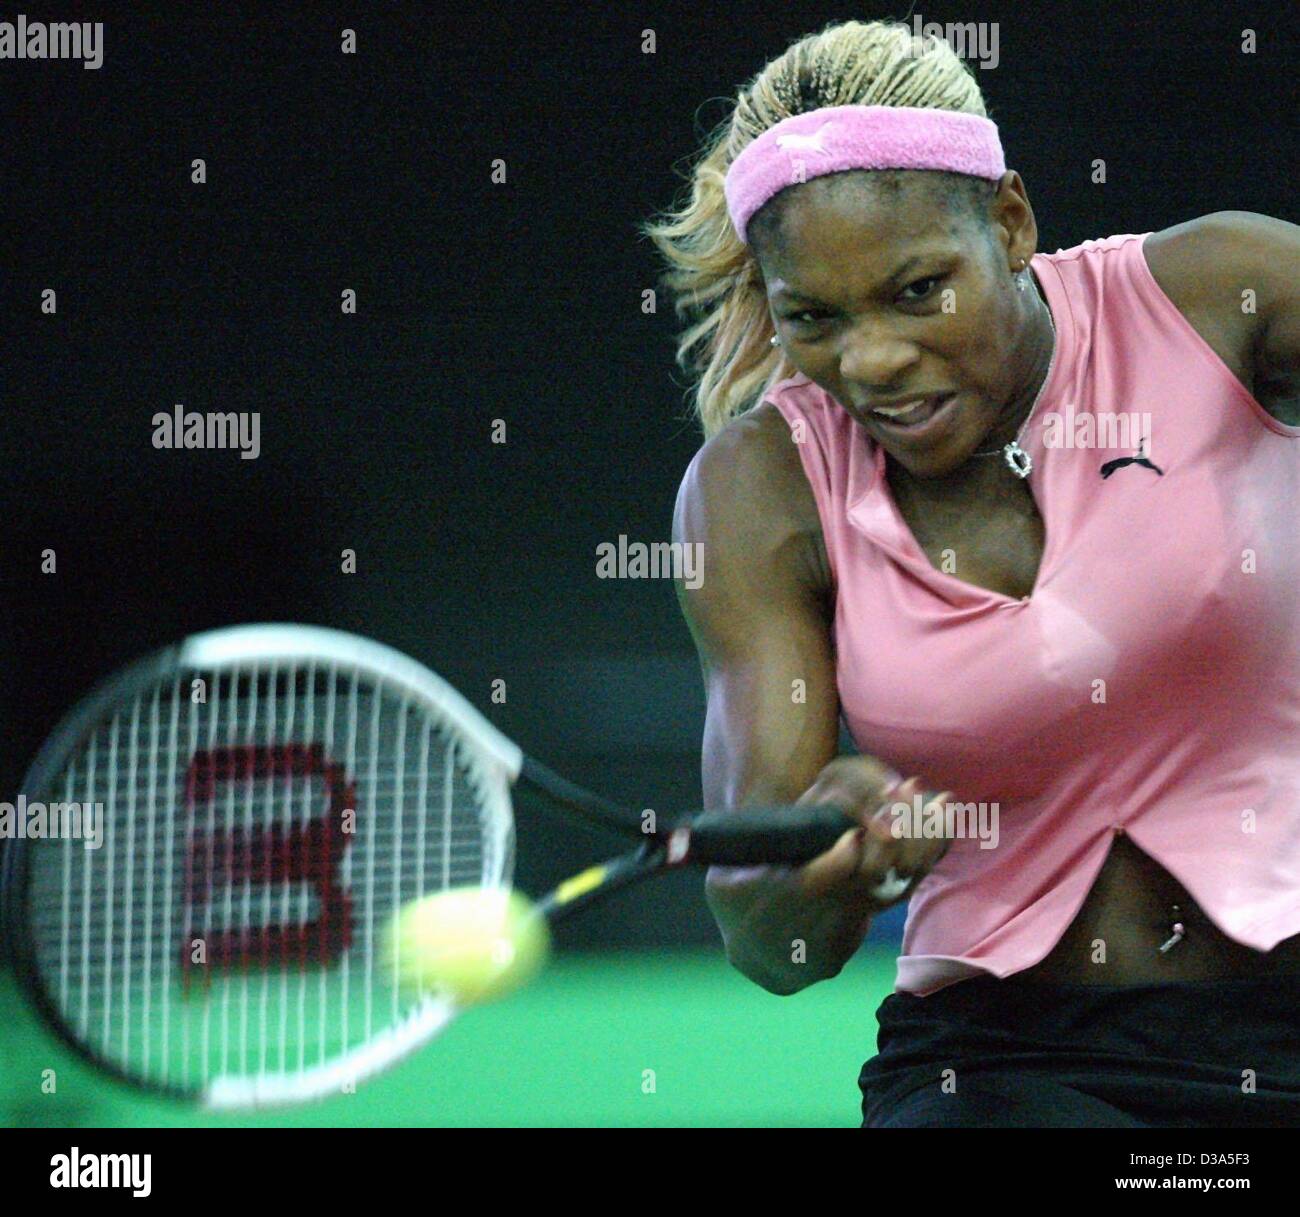 (Dpa) - US-Tennisspielerin Serena Williams spielt eine Vorhand im Endspiel der 13. internationalen Sparkassen Cup WTA-Turnier in Leipzig, Deutschland, 29. September 2002. Sie besiegte Anastasia Myskina 6:3 und 6:2. Stockfoto